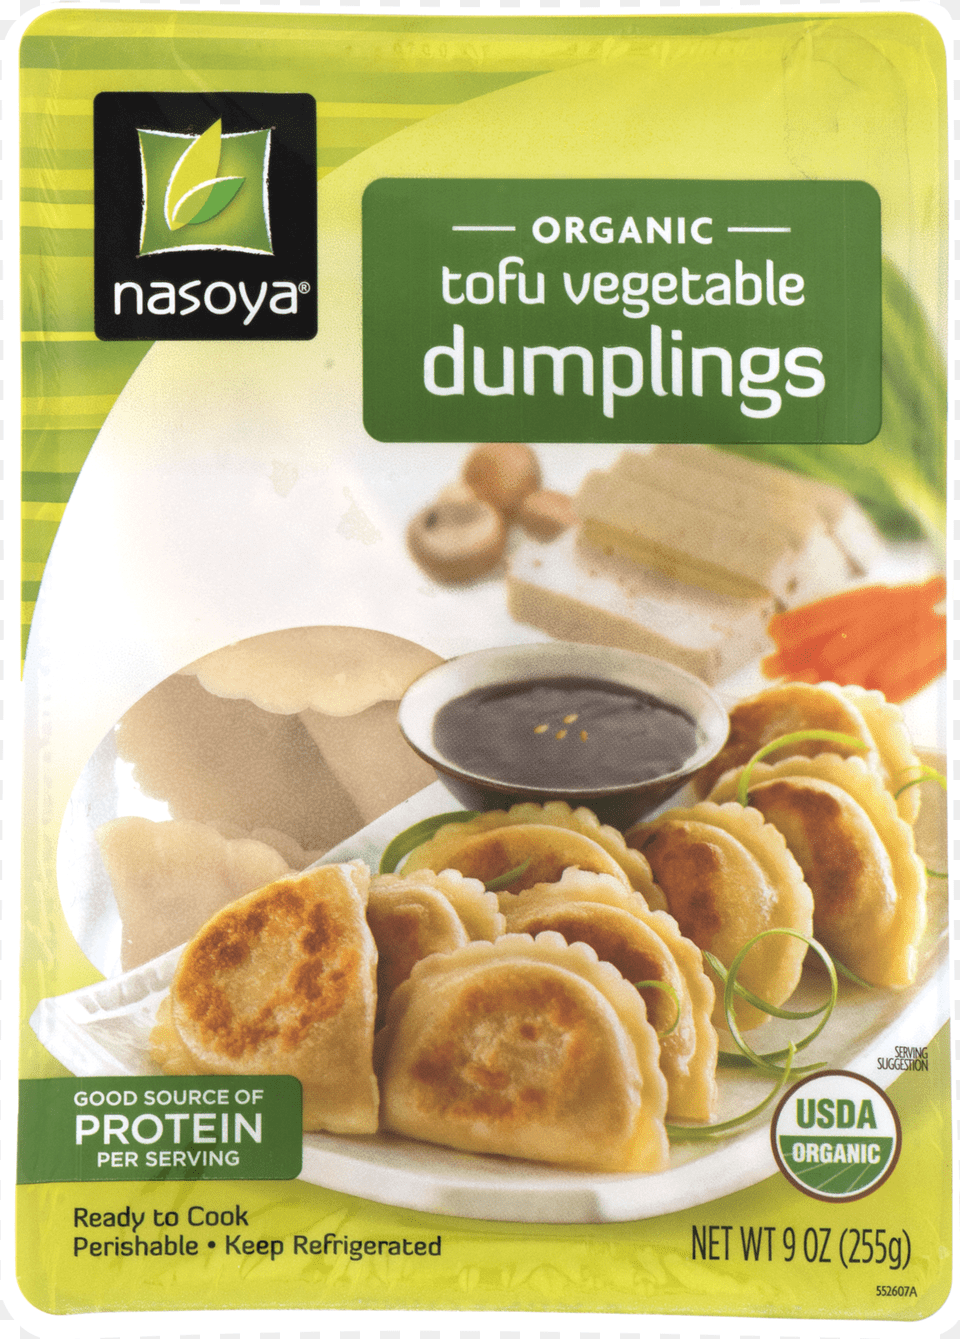 Nasoya Tofu Vegetable Dumplings, Food, Lunch, Meal, Bread Png Image